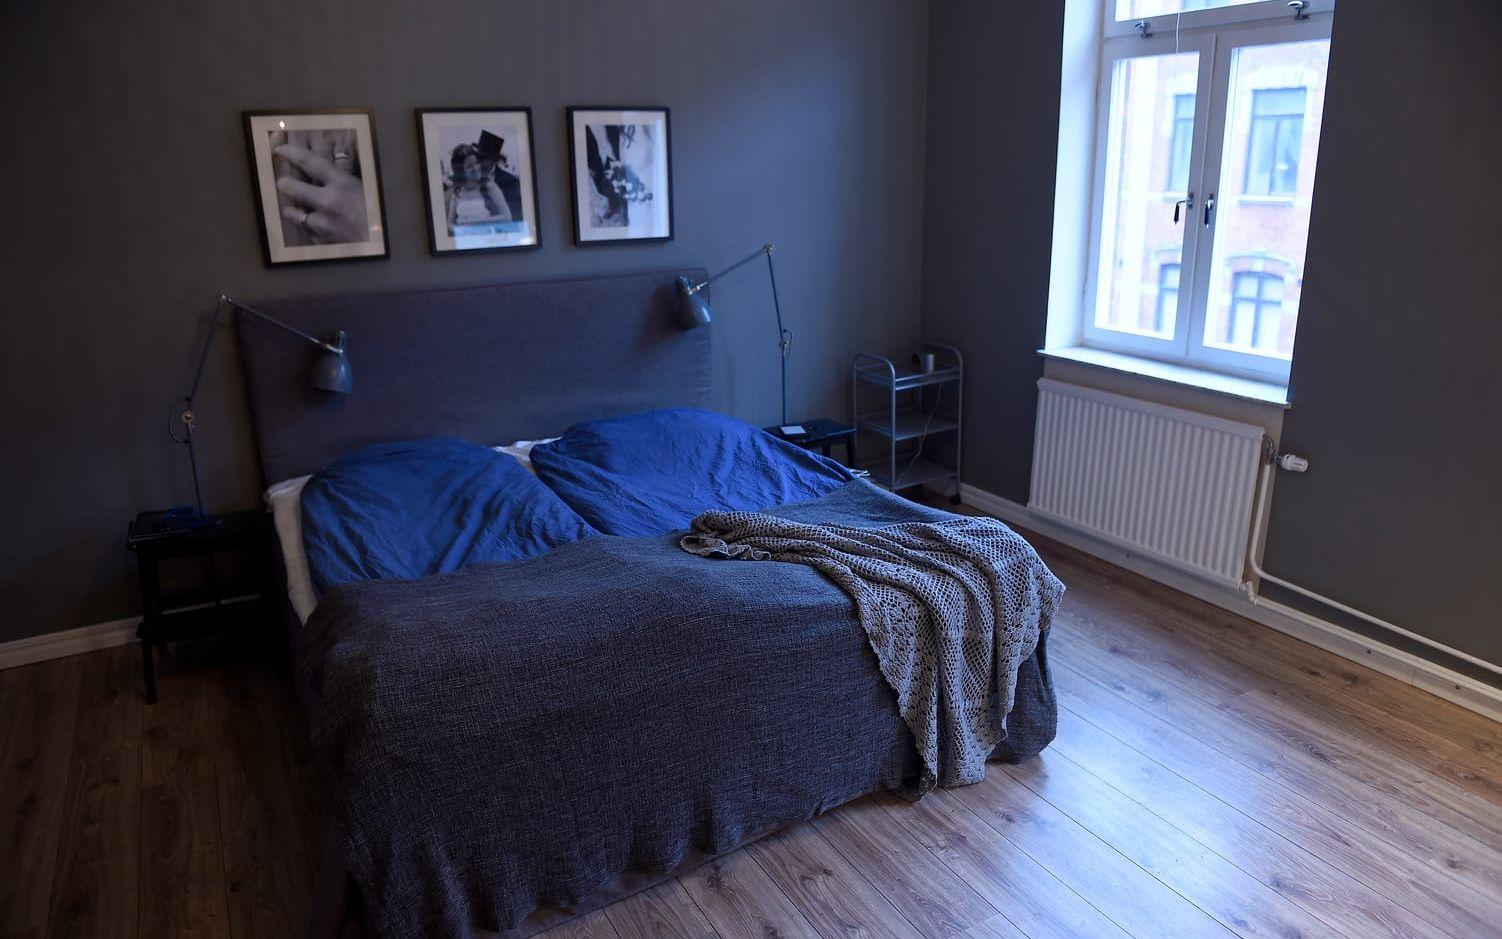 Efter flytten finns inte längre gästrum utan bara parets eget sovrum. Gäster får sova på en uppblåsbar madrass, som inte tar mycket plats när den inte används. Foto: Björn Lindgren/TT